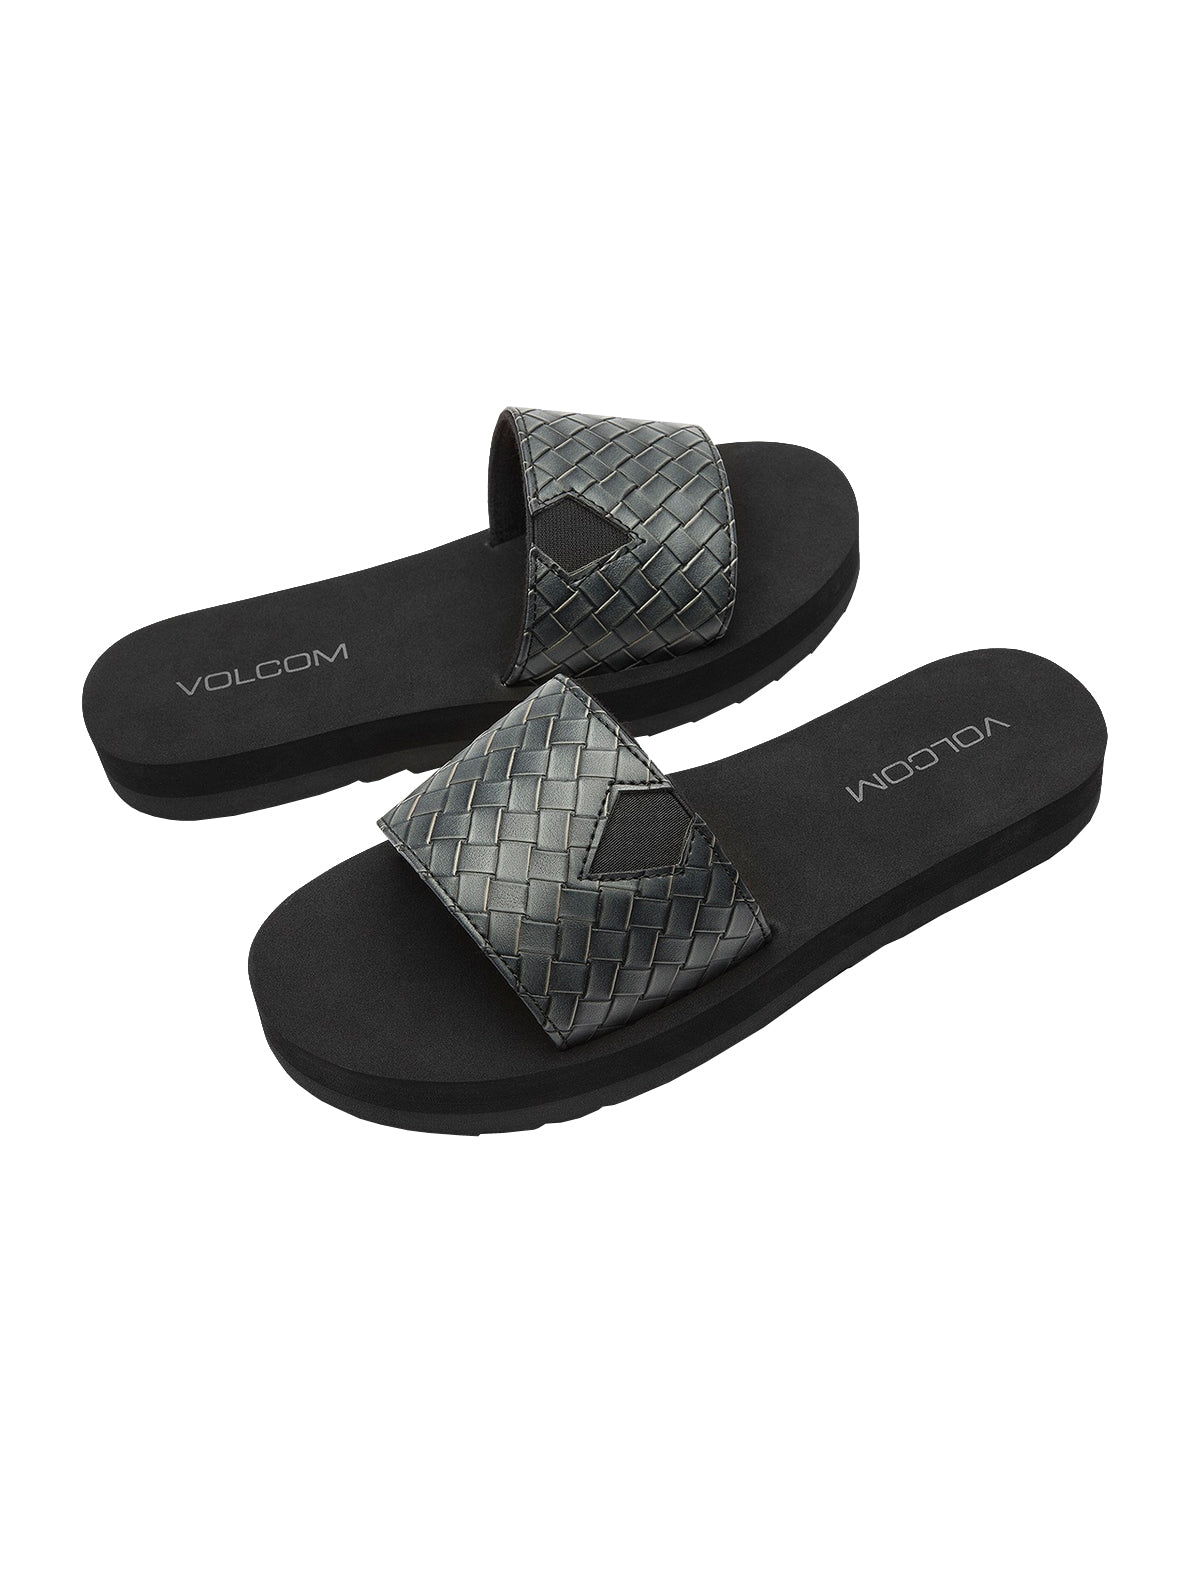 Volcom Not So Simple Slide Womens Sandal BLK-Black 8